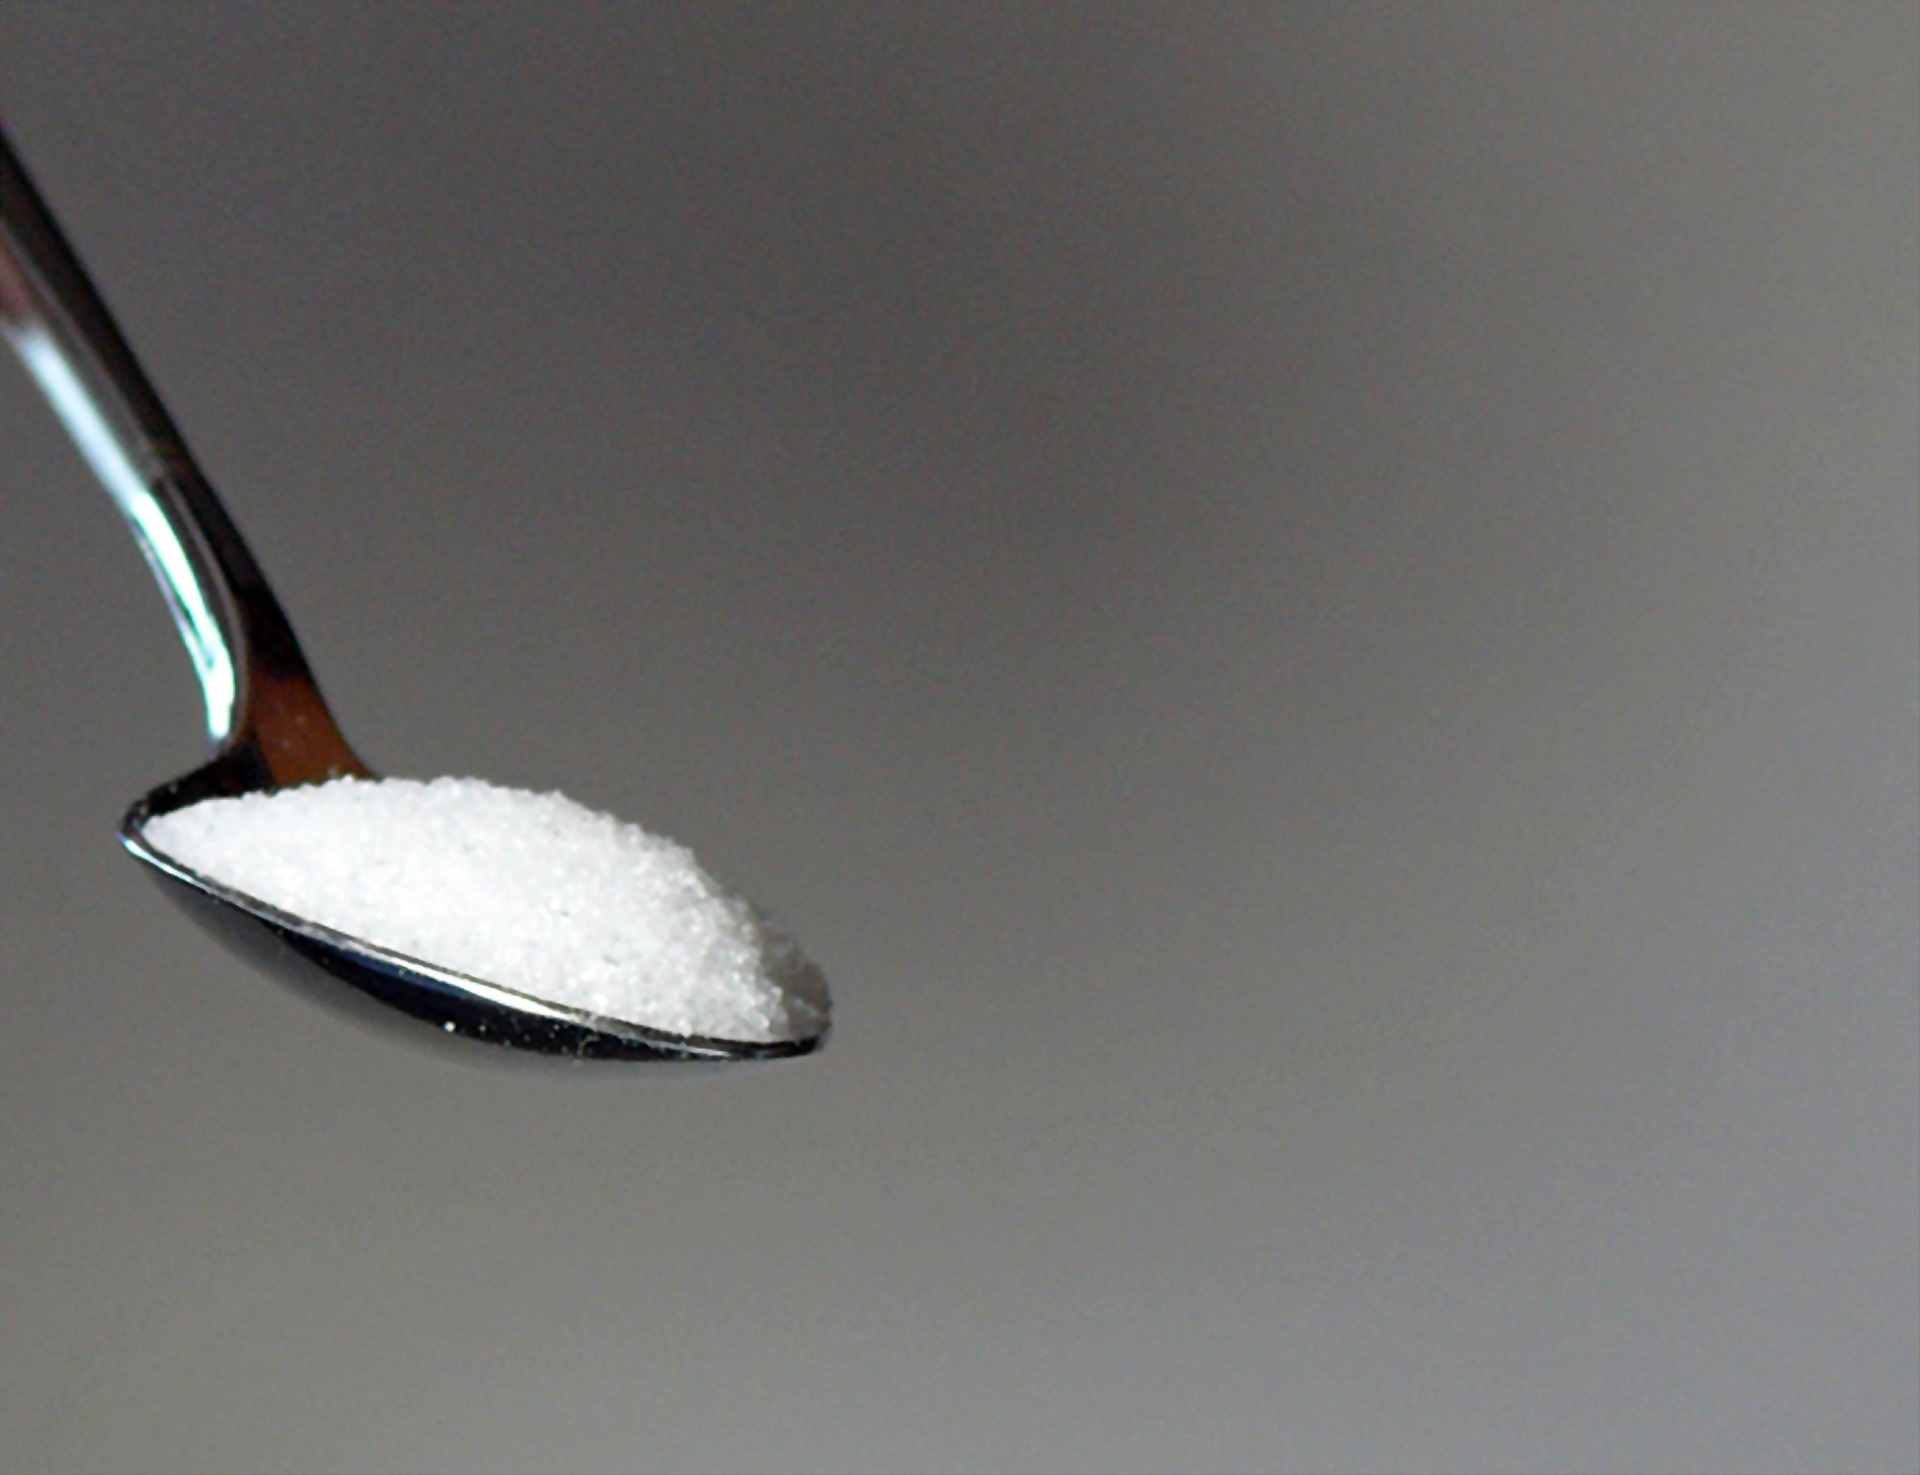 březový cukr jako alternativní sladidlo pomáhá nejen zubům